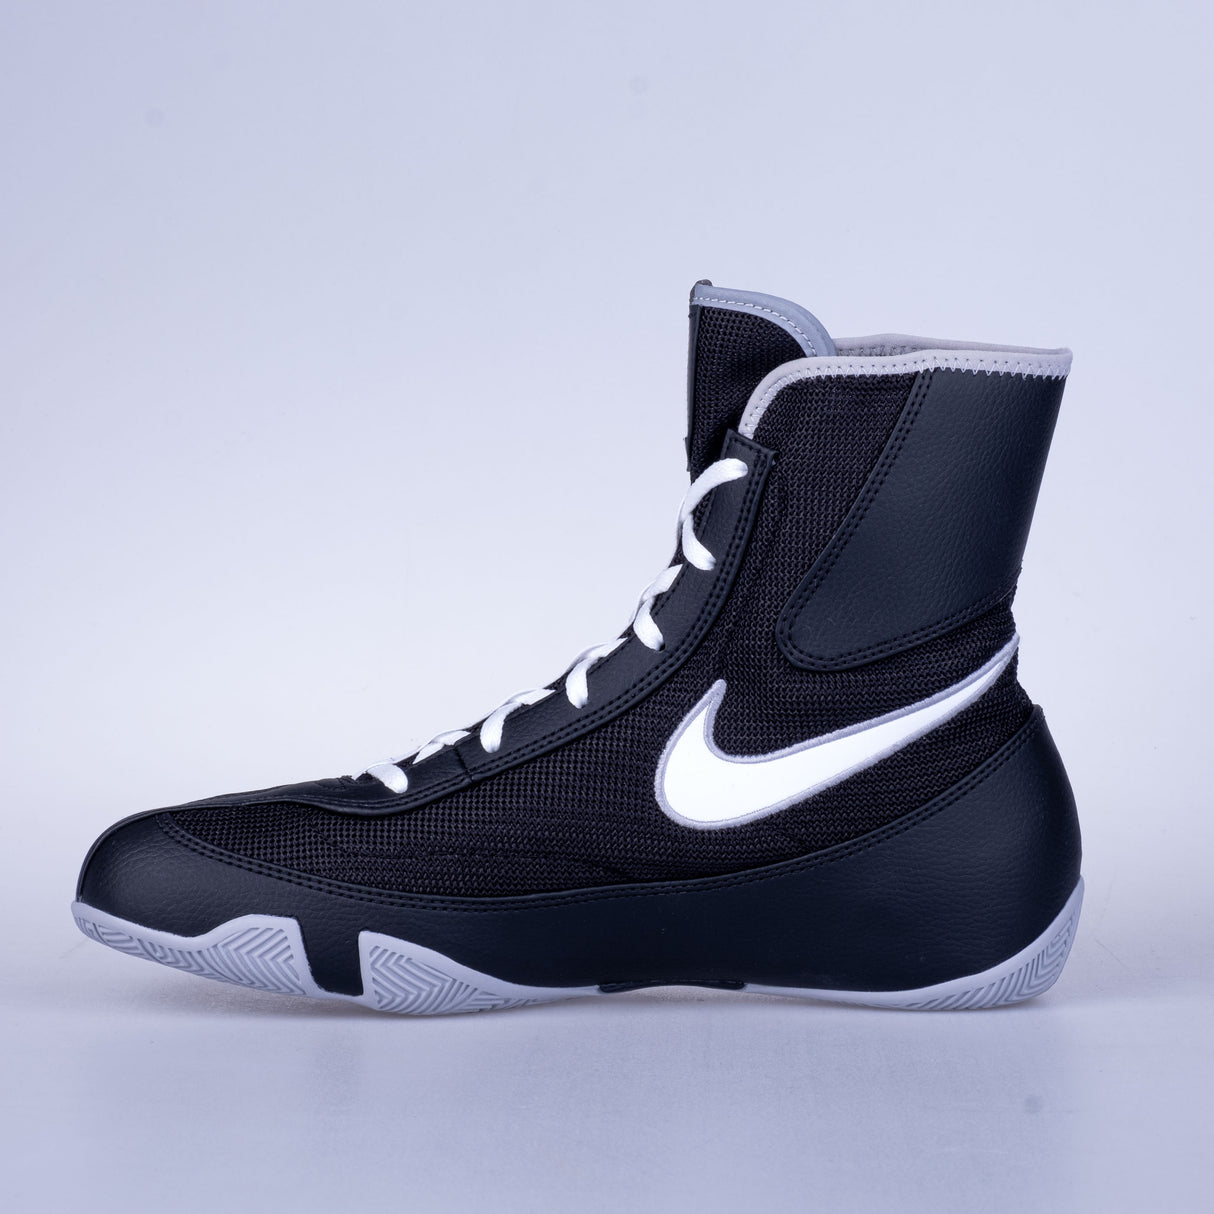 Boxschuhe Nike Machomai 2 - schwarz, 321819003